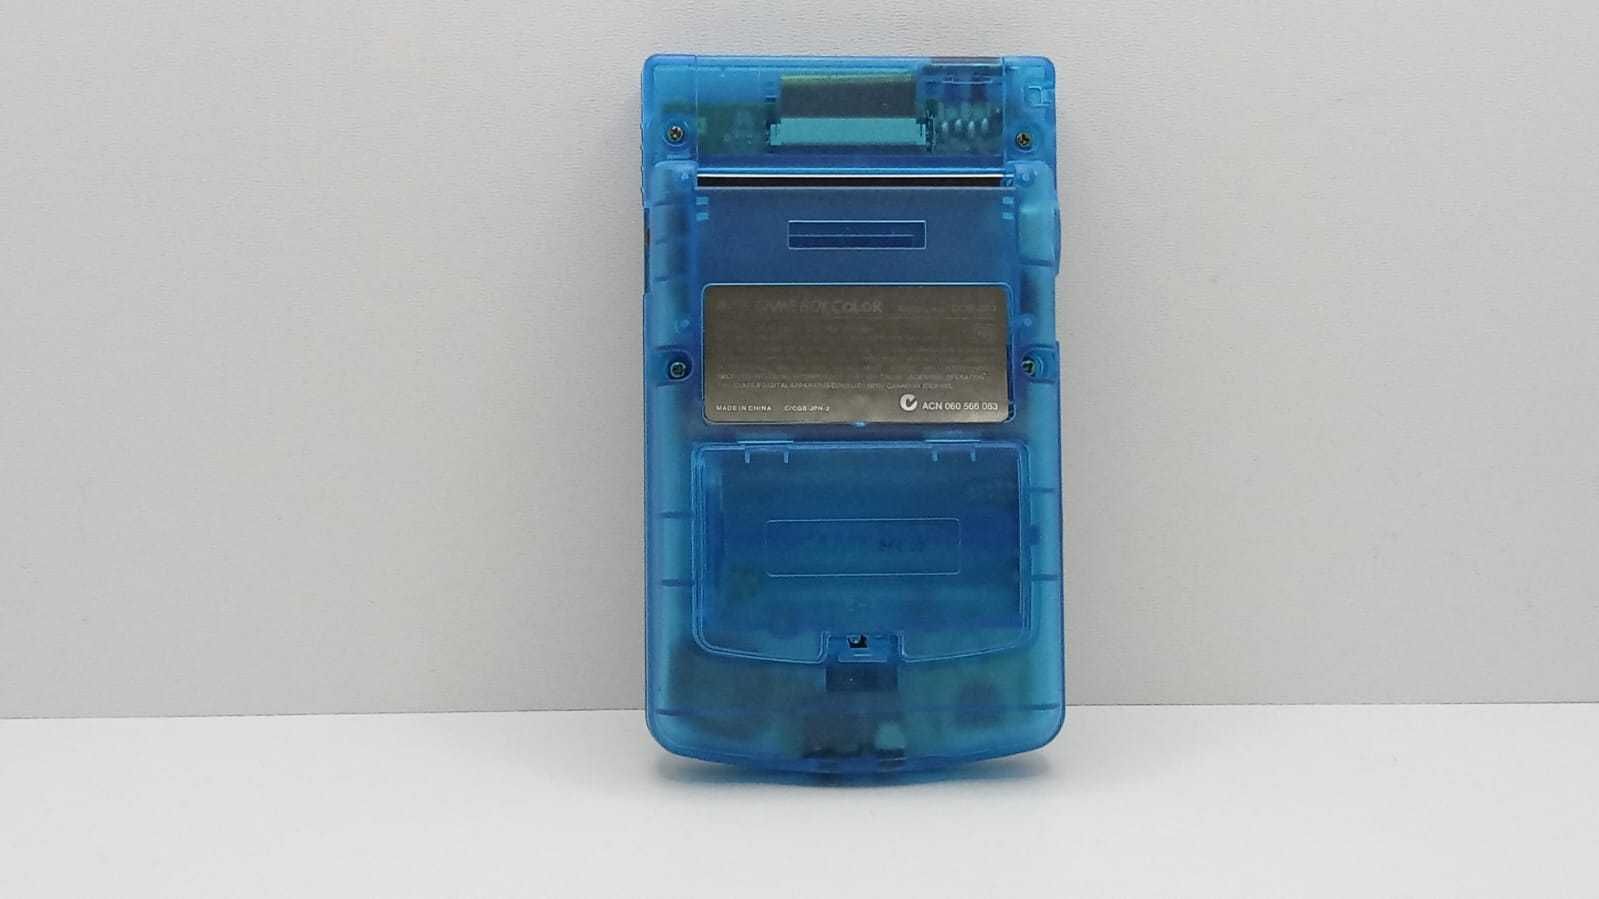 Consola Nintendo GameBoy Color - Transparent - div culori - impecablie